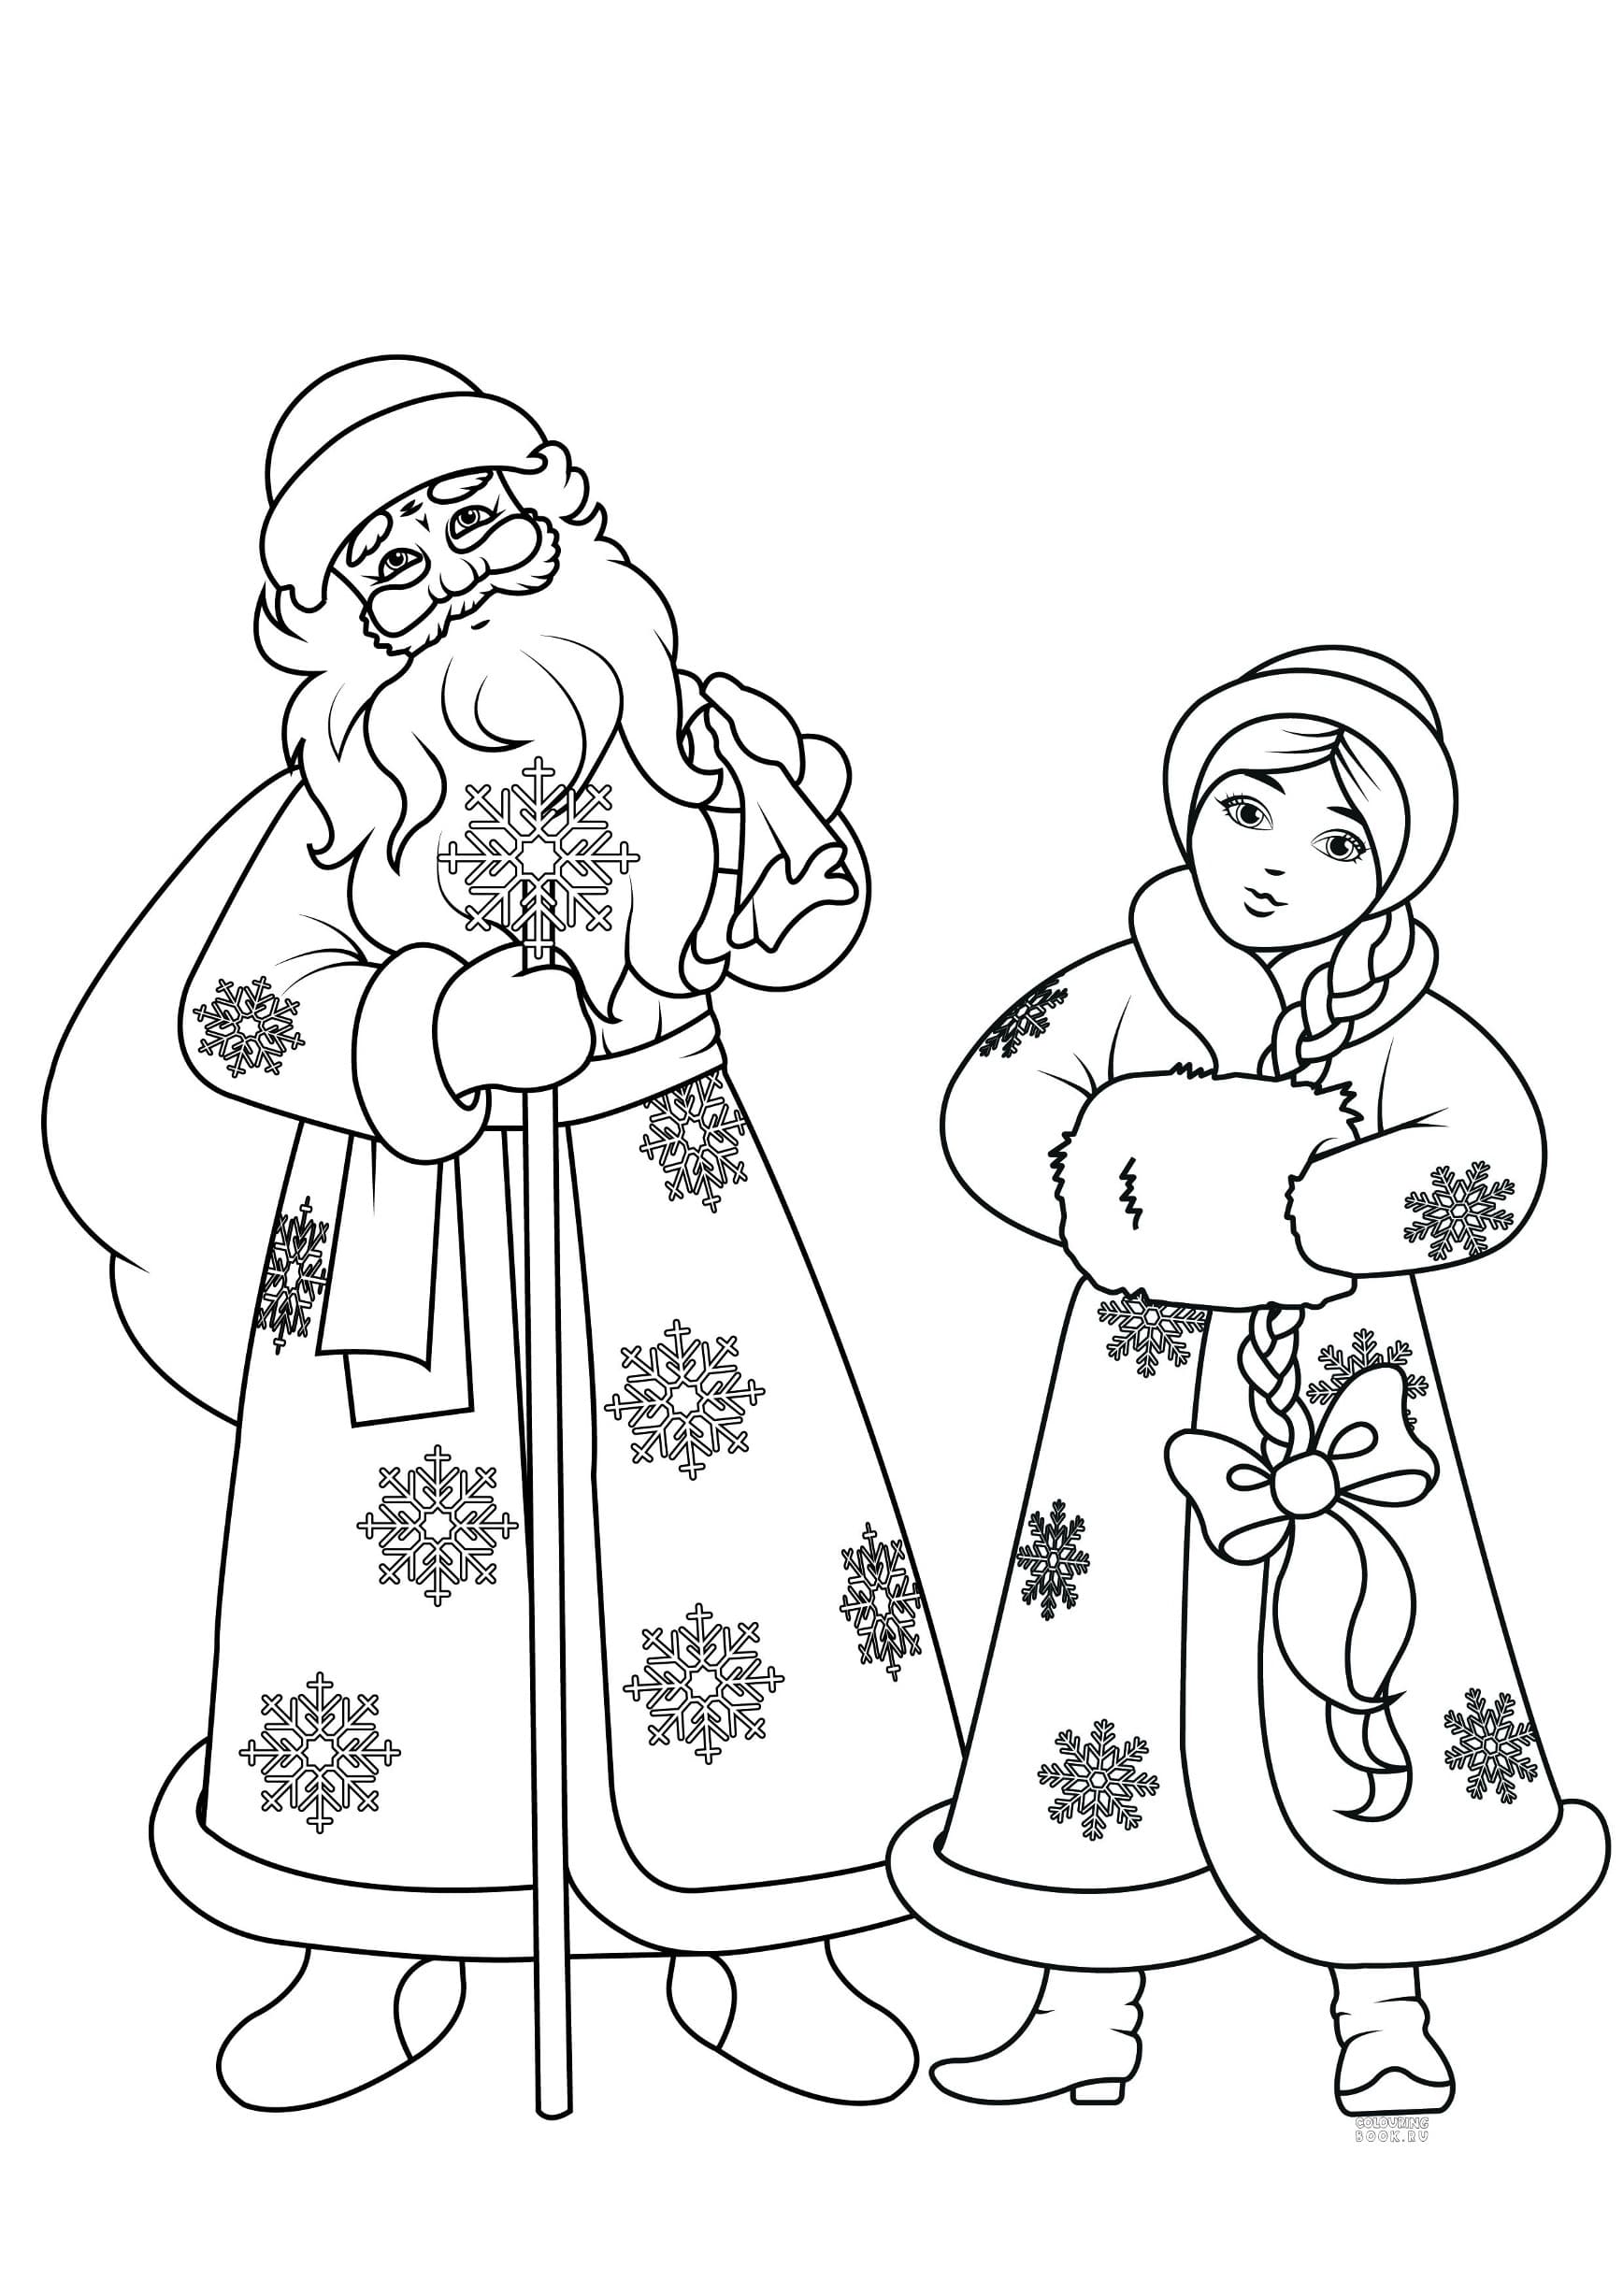 Девочка снегурочка раскраска. Дед Мороз и Снегурочка раскраска. Новогодние раскраски дед Мороз и Снегурочка. Раскраска Деда Мороза и Снегурочки. Раскраска дед Мороз и Снегуро.